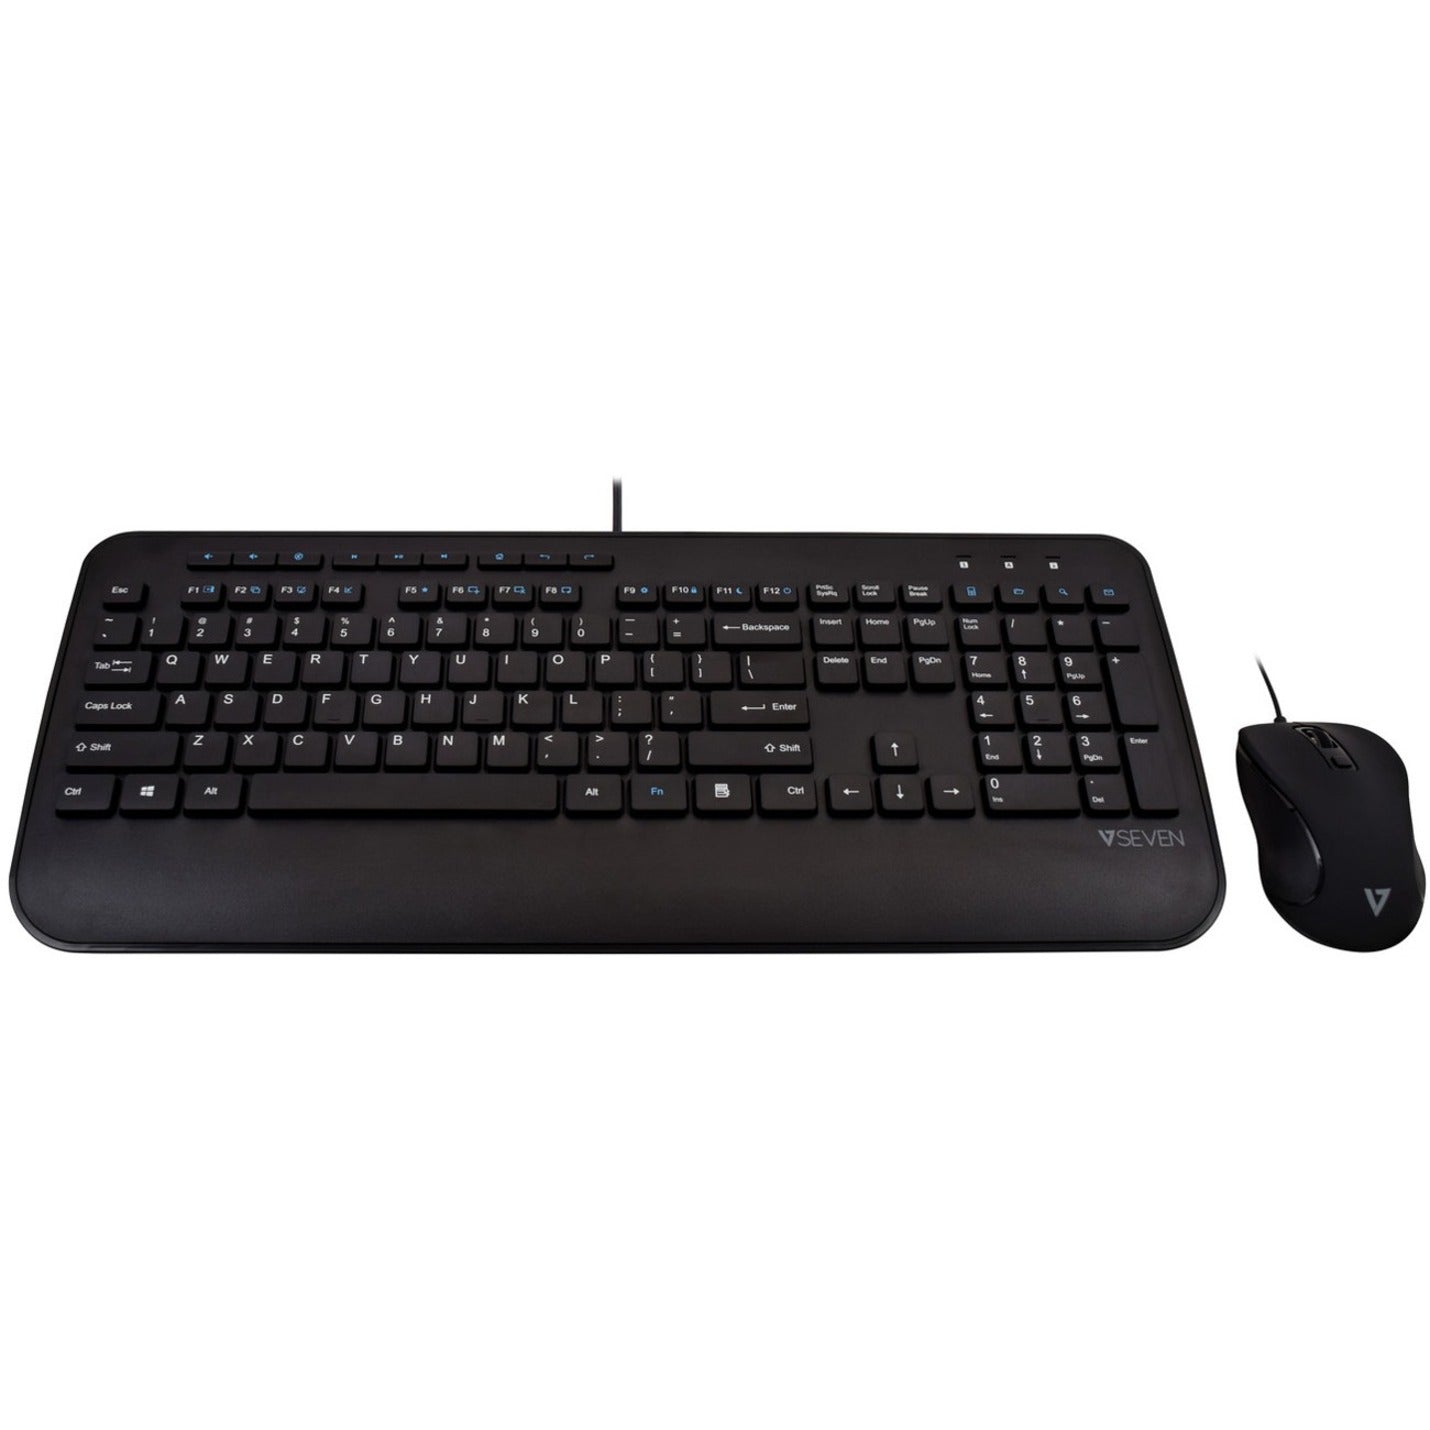 V7 CKU300US Professional USB Multimedia Keyboard Combo, Low-profile Keys, Adjustable Tilt, Palm Rest